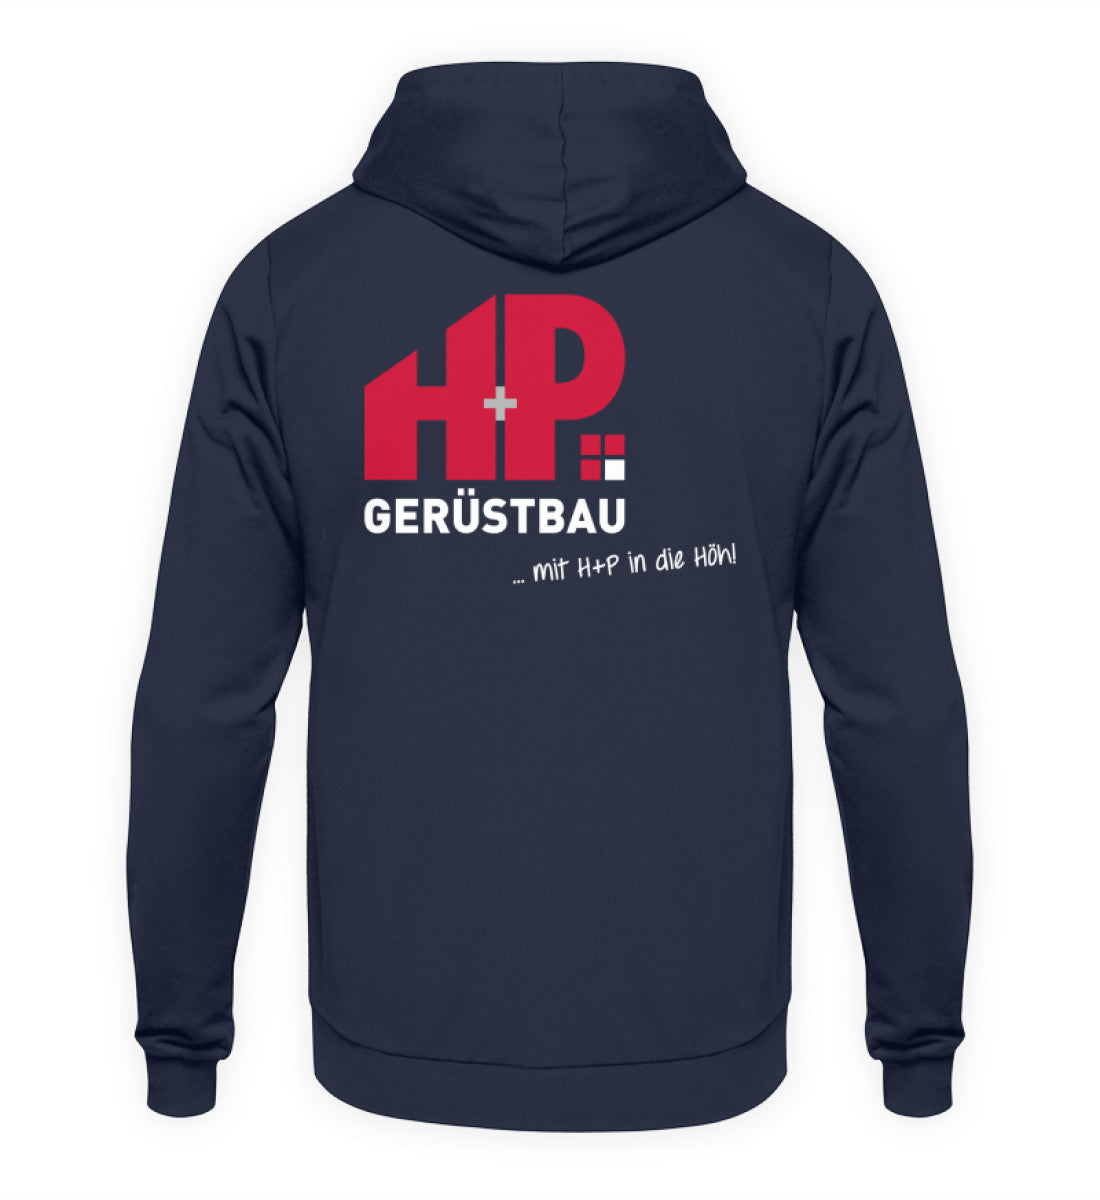 H+P Gerüstbau  - Unisex Kapuzenpullover Hoodie €39.95 Gerüstbauer - Shop >>